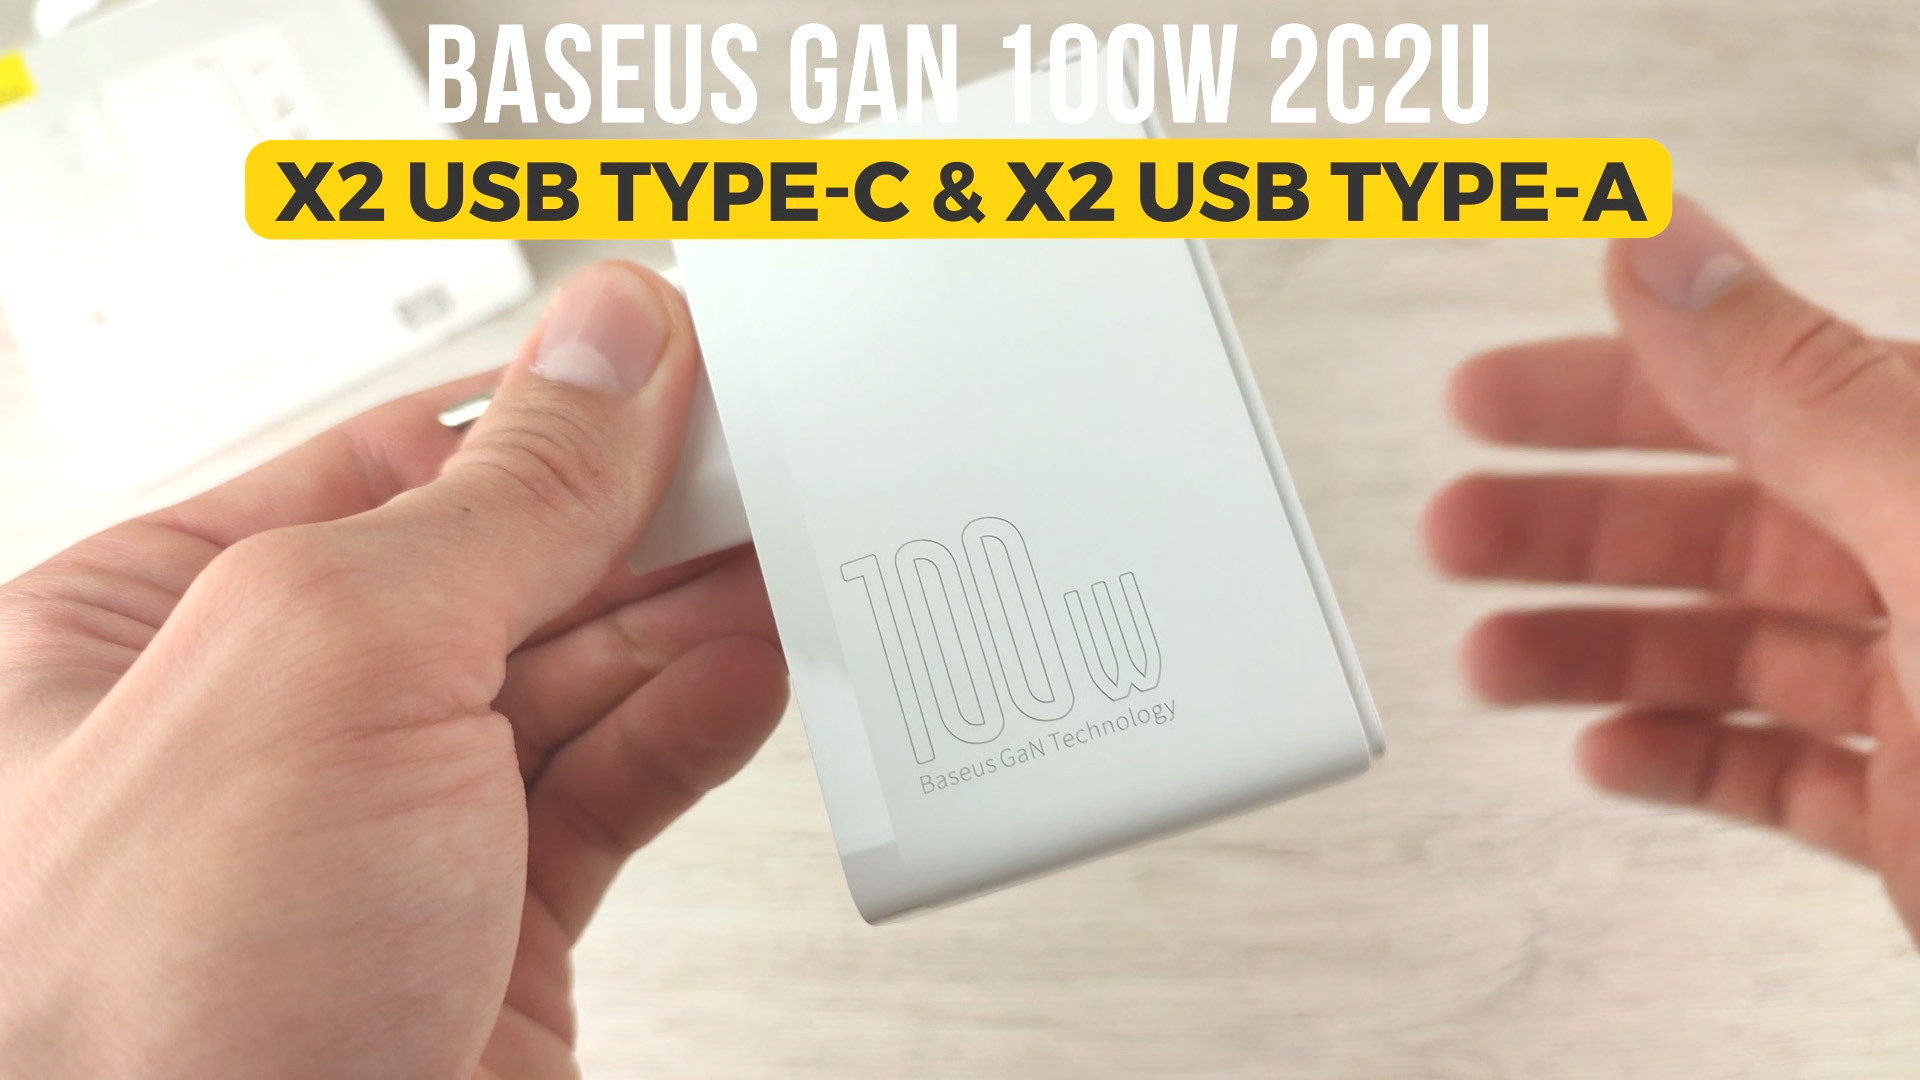 Baseus GaN 100W design